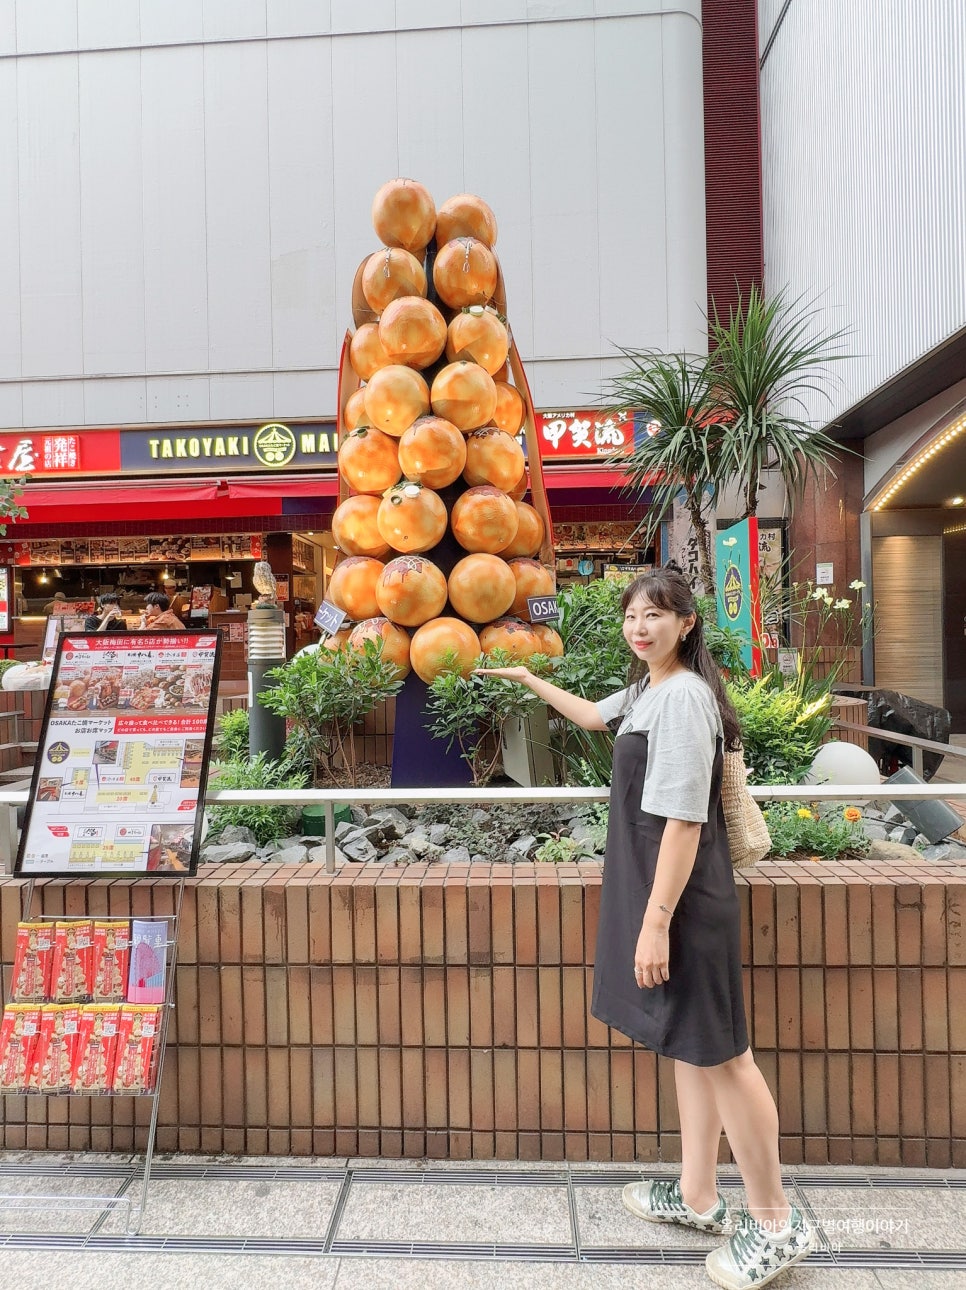 일본 오사카 여행 코스 우메다 공중정원 입장료 포함 간사이 조이패스 사용법 후기